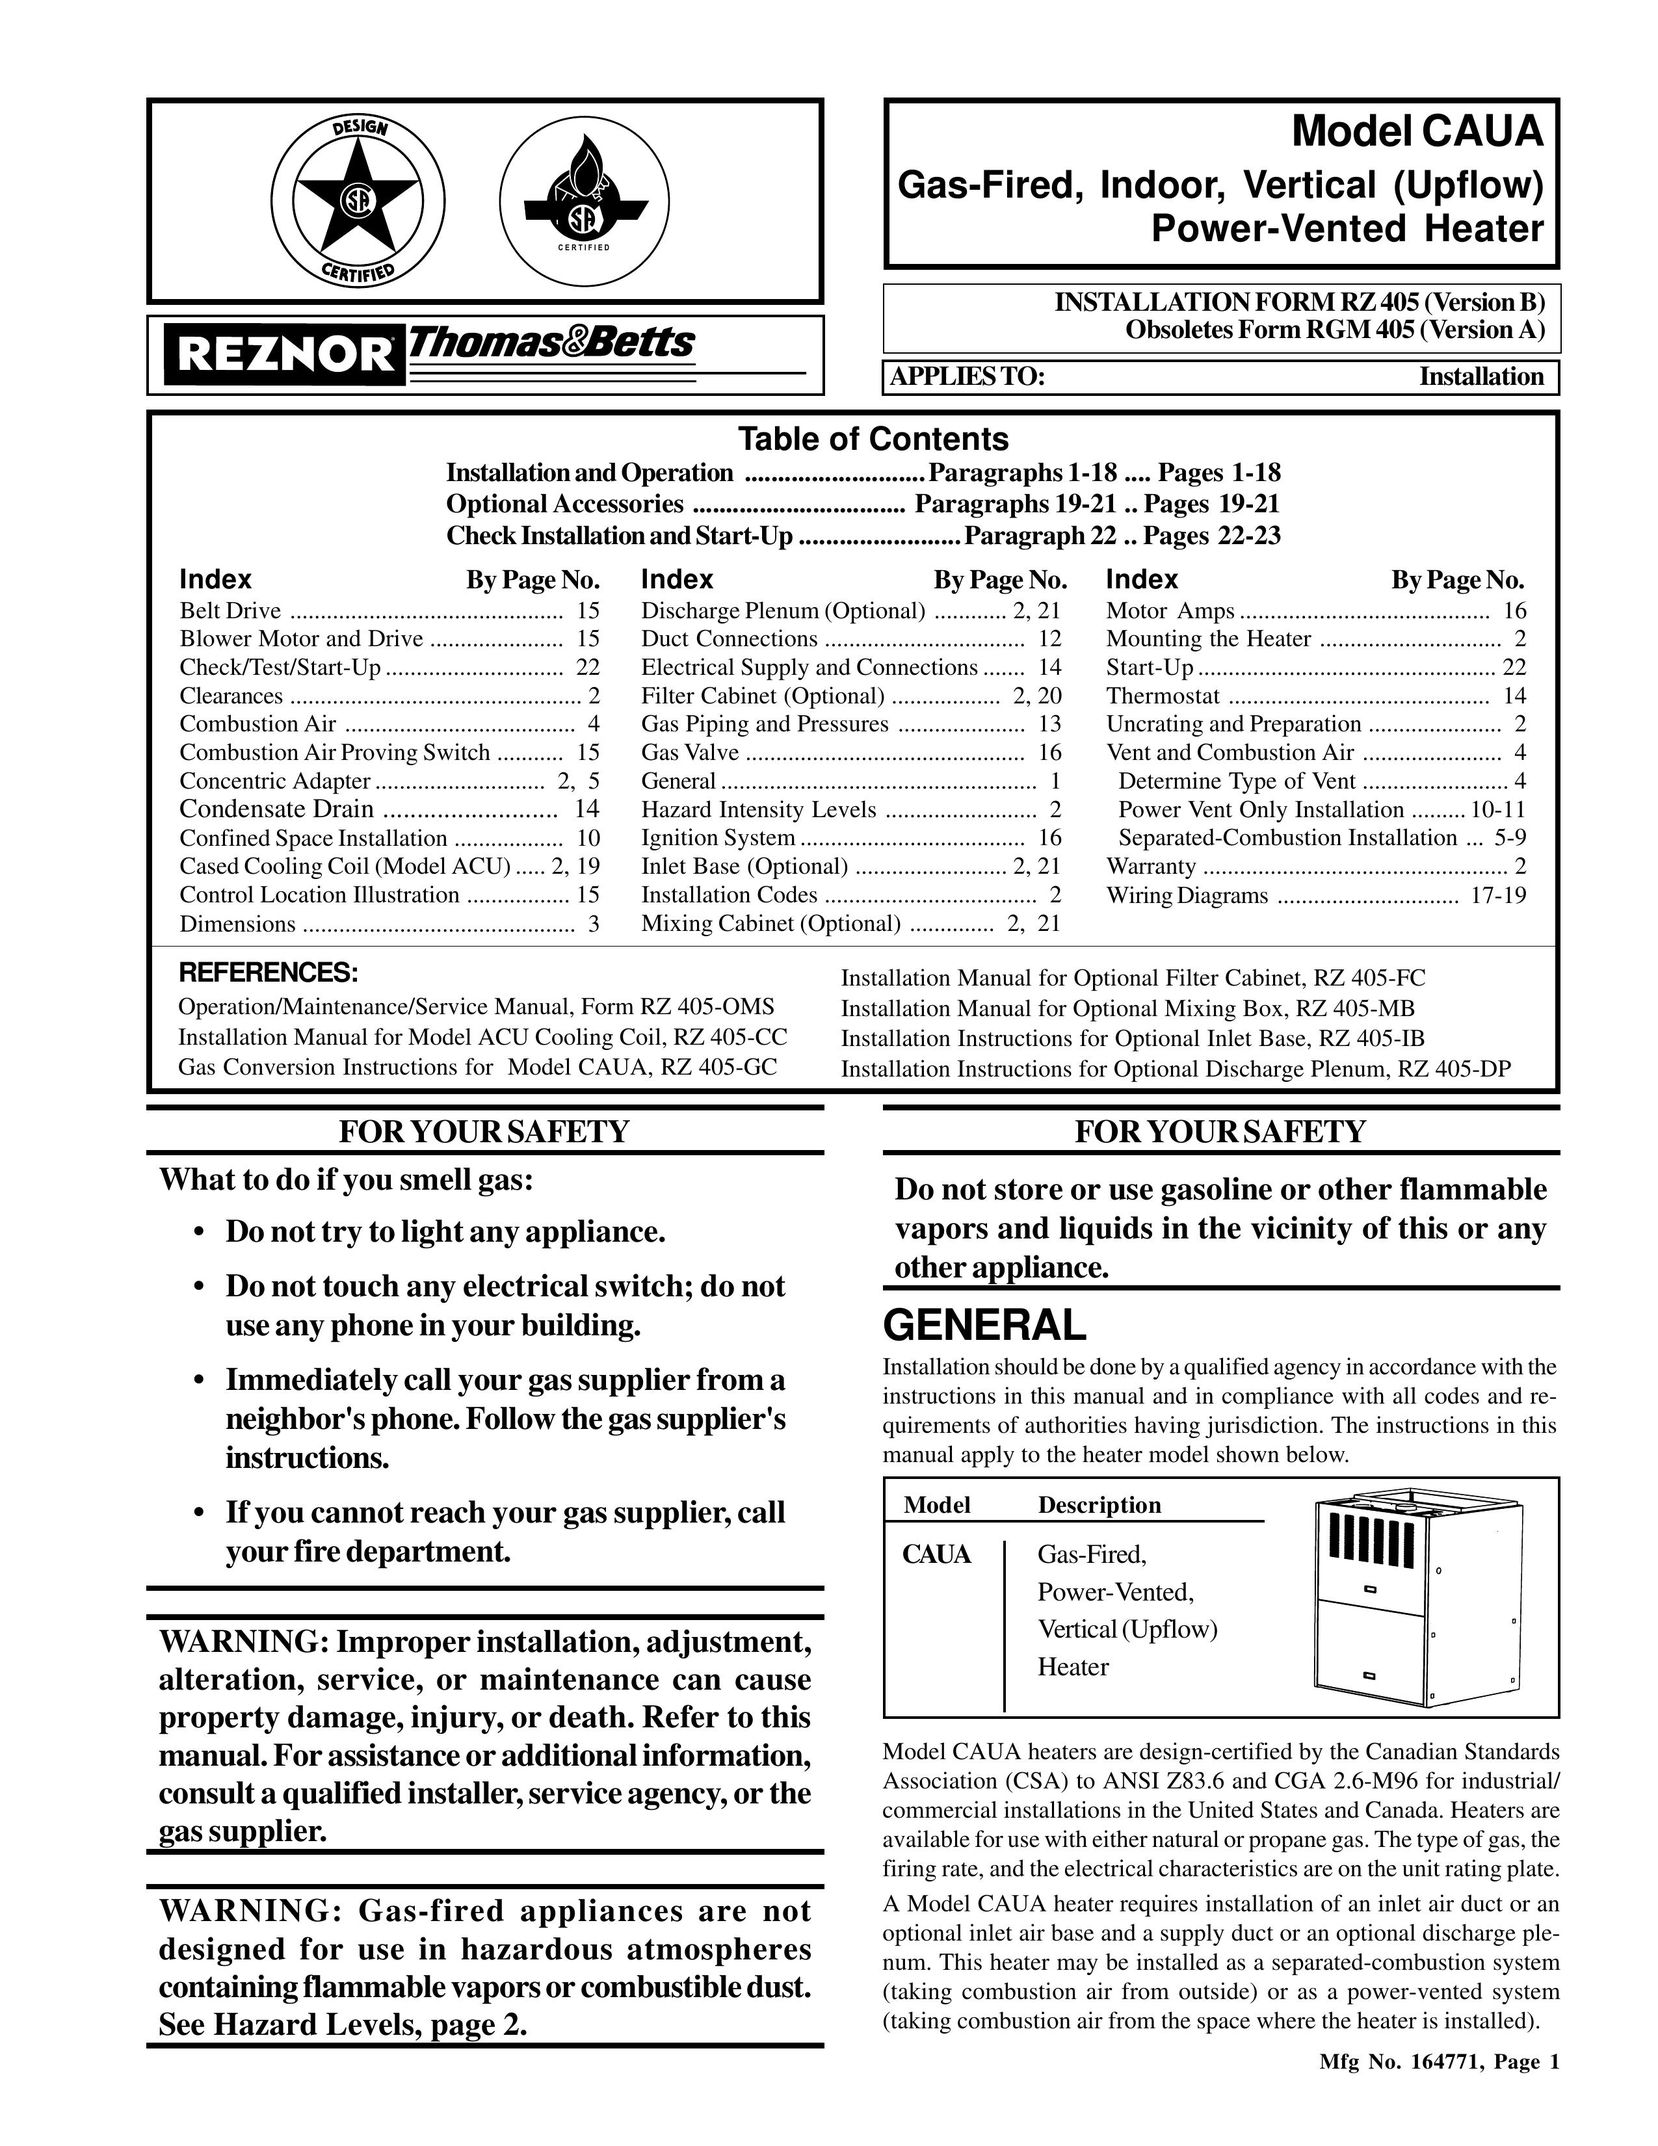 Thomas & Betts RGM 405 Furnace User Manual